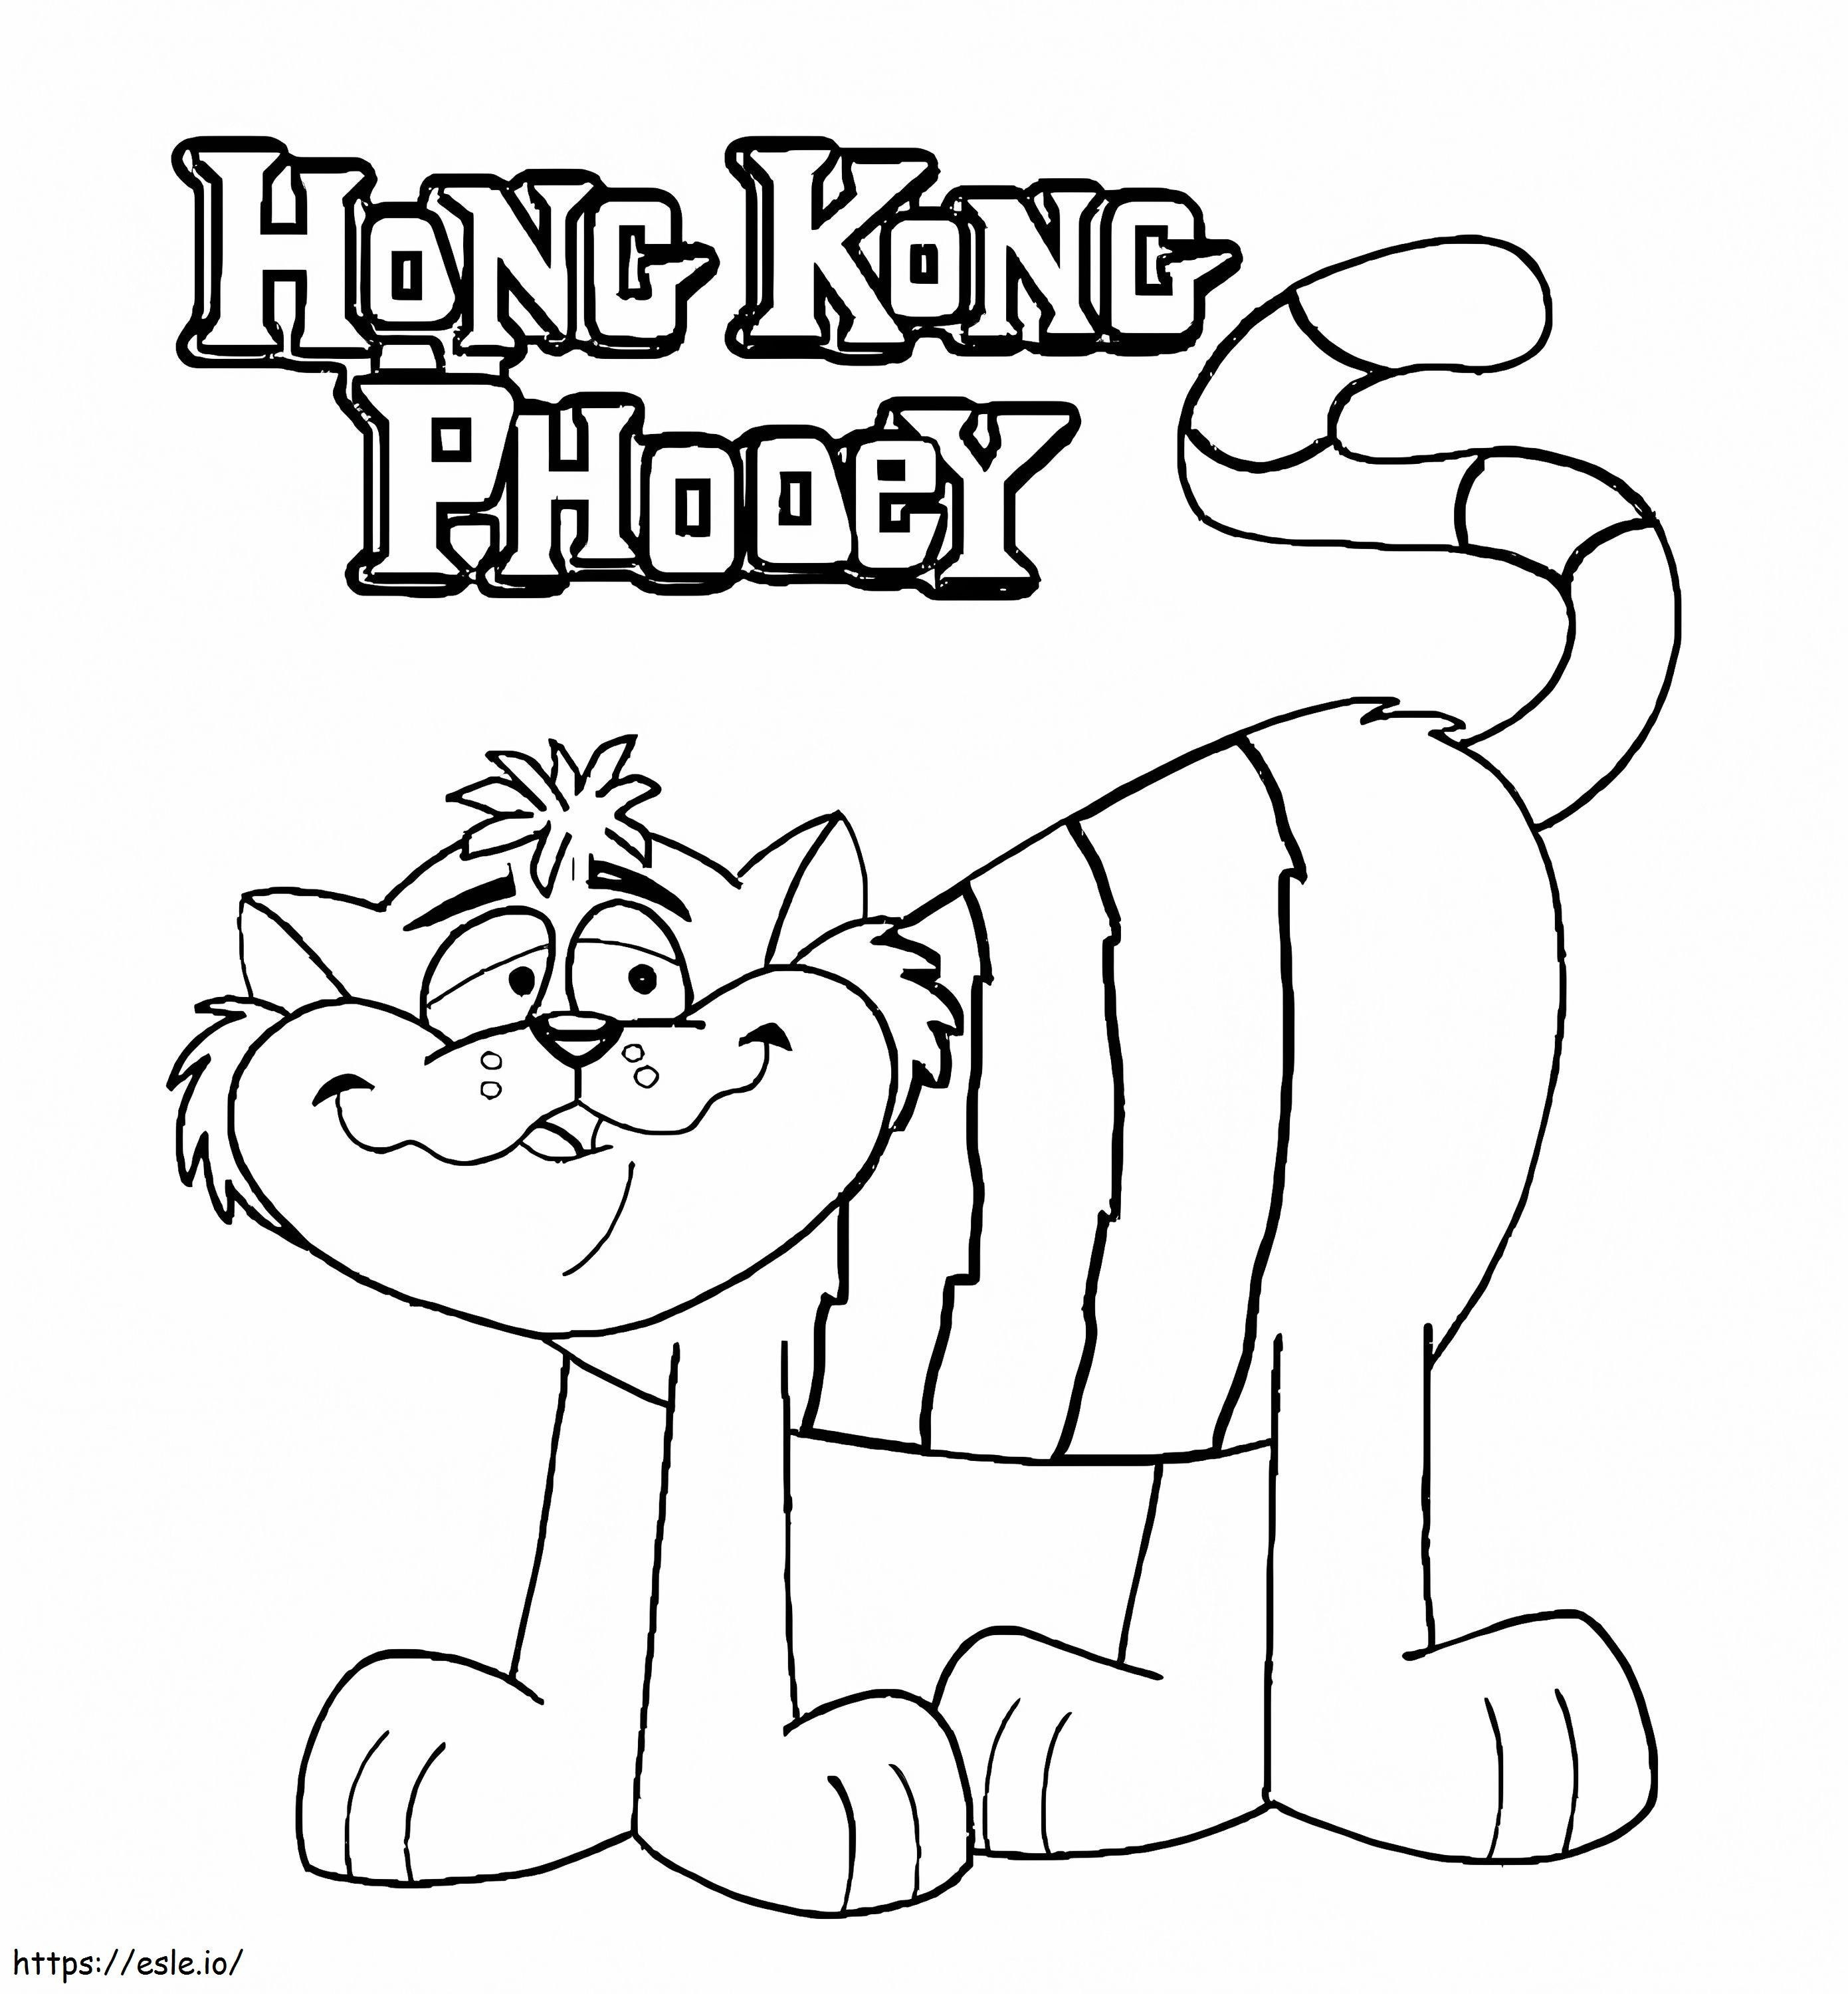 Trova Hong Kong Phooey da colorare